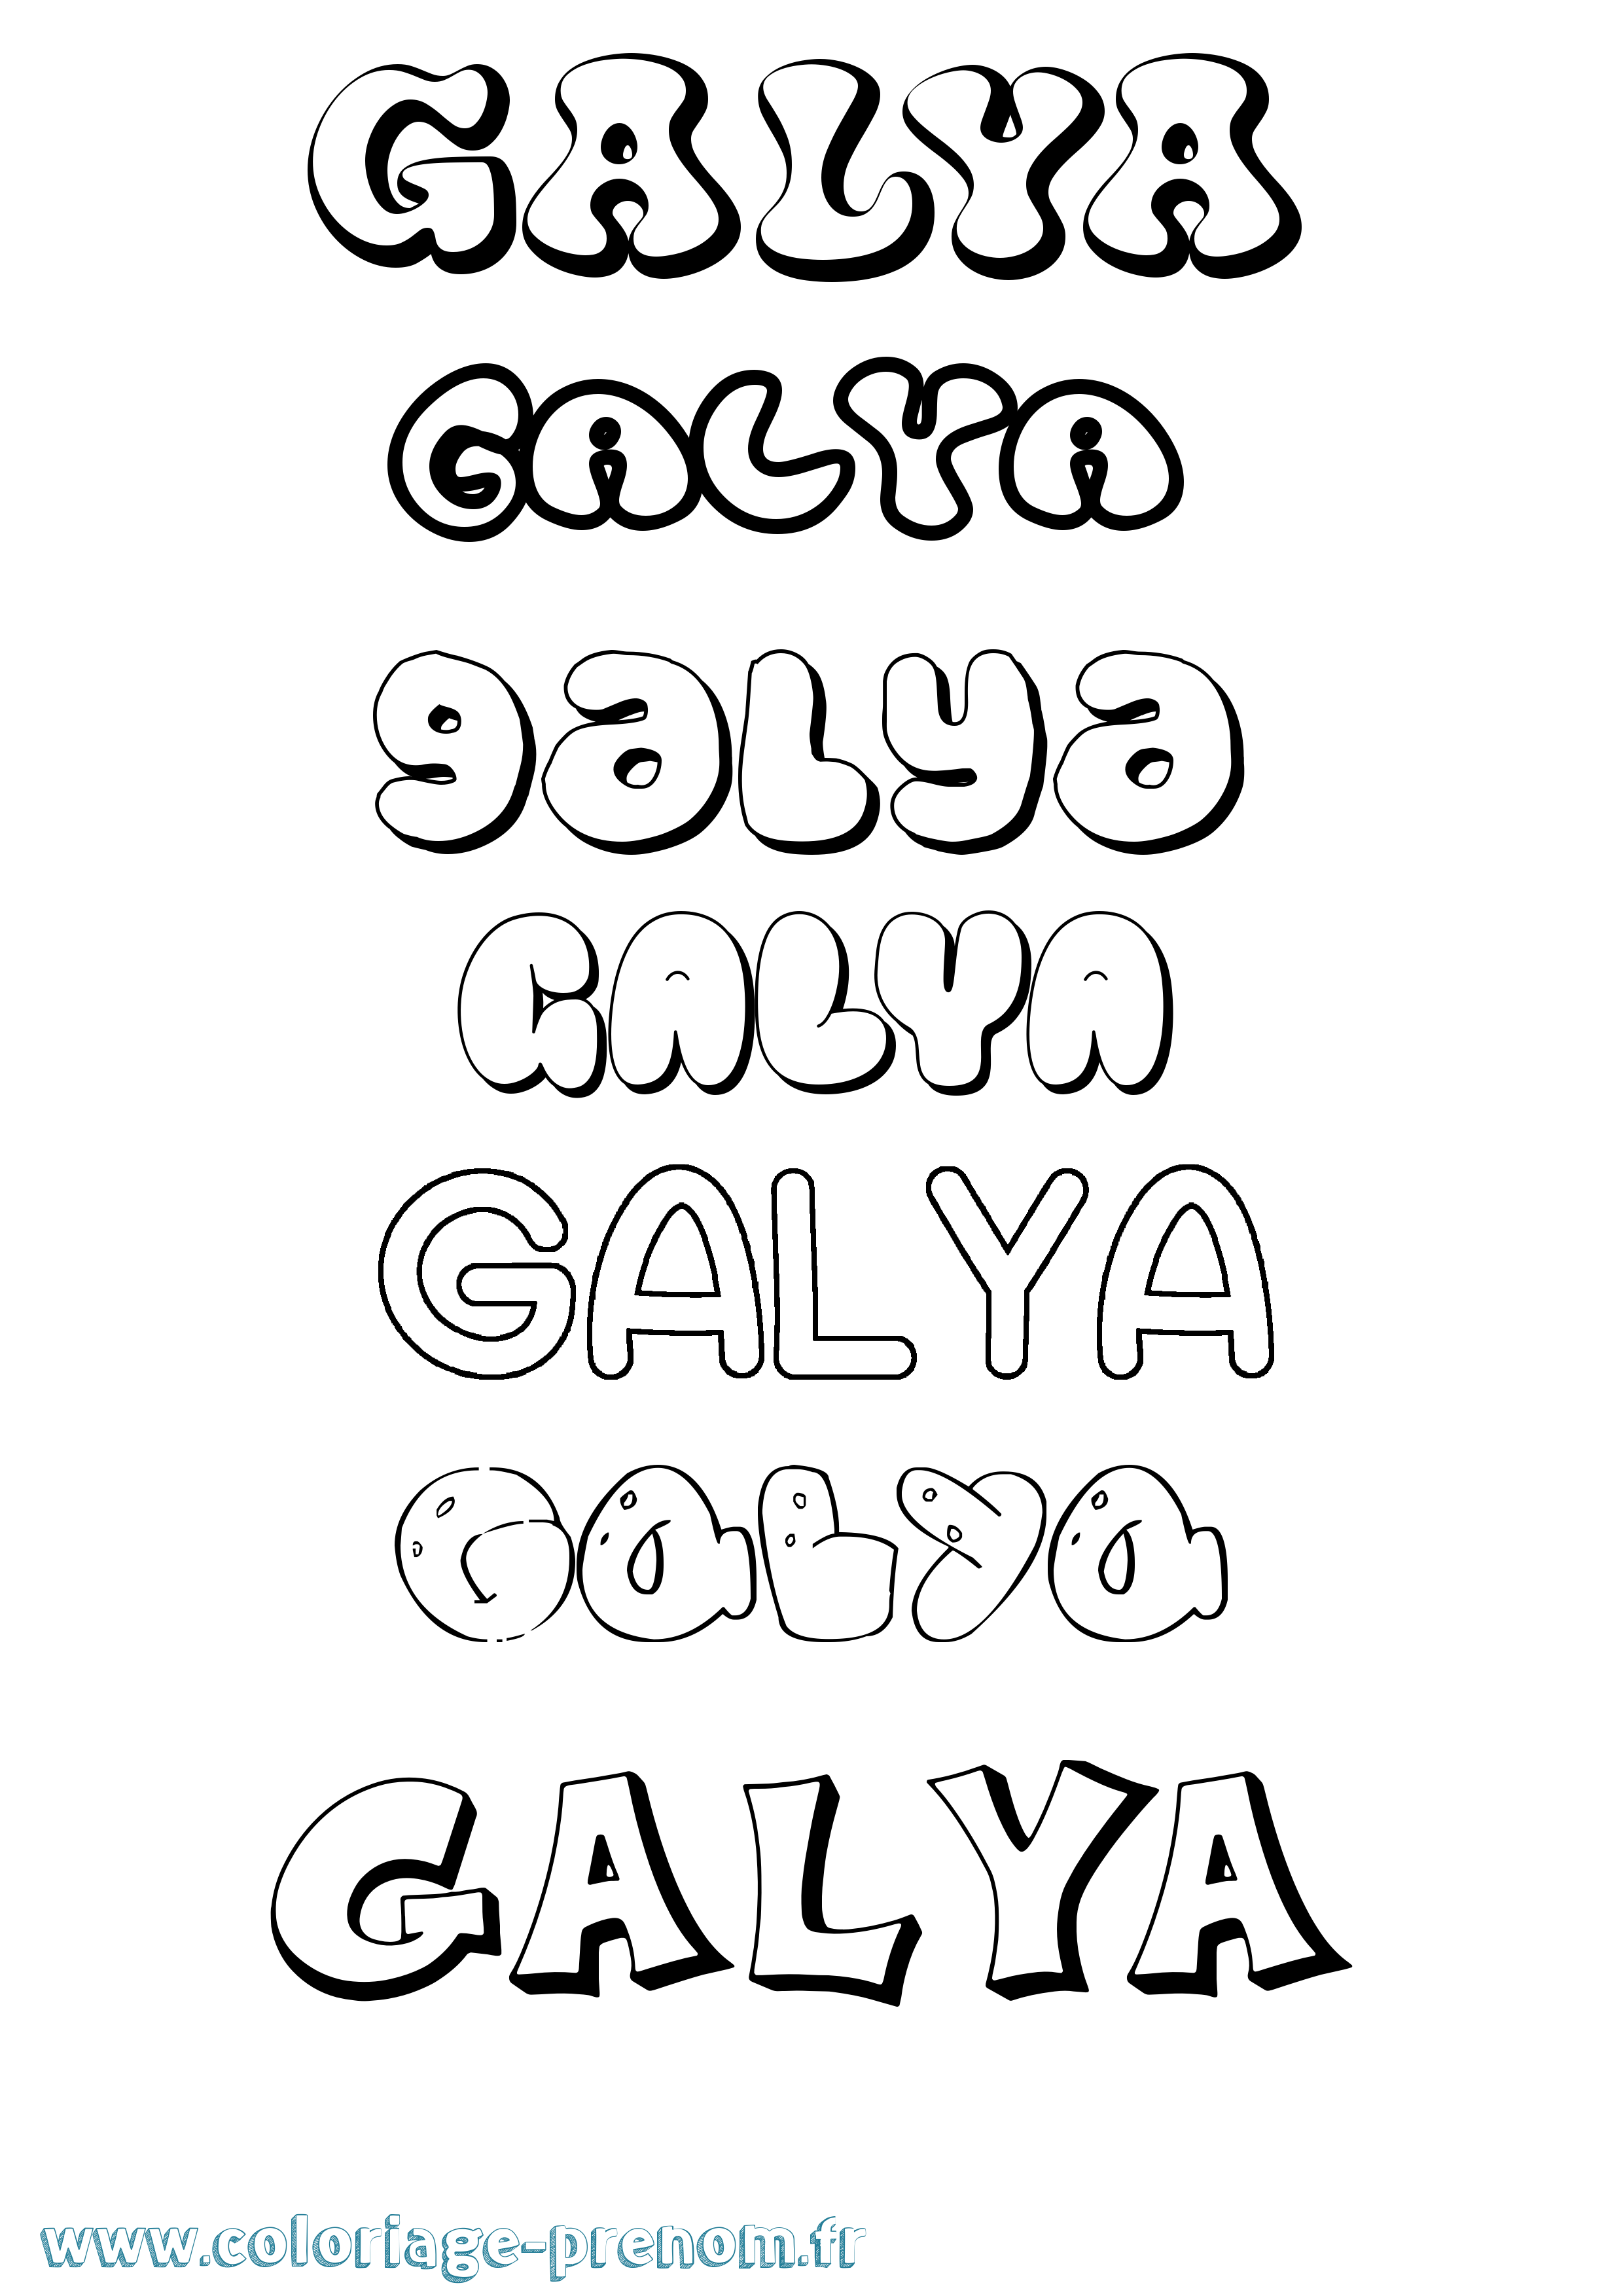 Coloriage prénom Galya Bubble